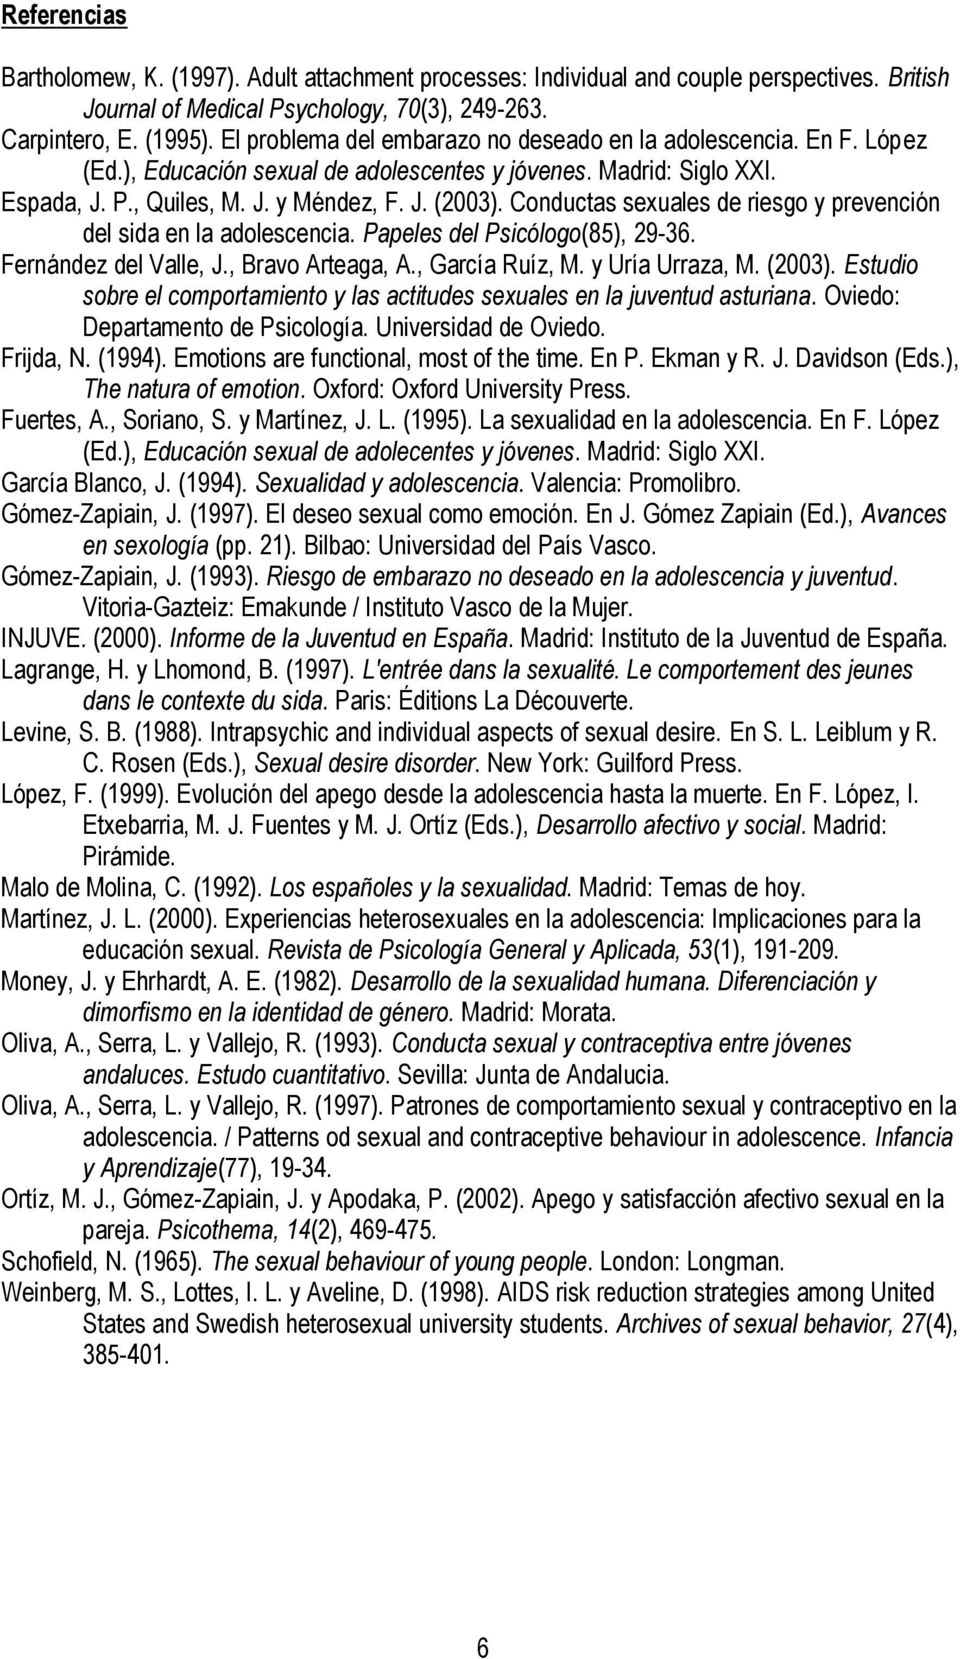 Conductas sexuales de riesgo y prevención del sida en la adolescencia. Papeles del Psicólogo(85), 29-36. Fernández del Valle, J., Bravo Arteaga, A., García Ruíz, M. y Uría Urraza, M. (2003).